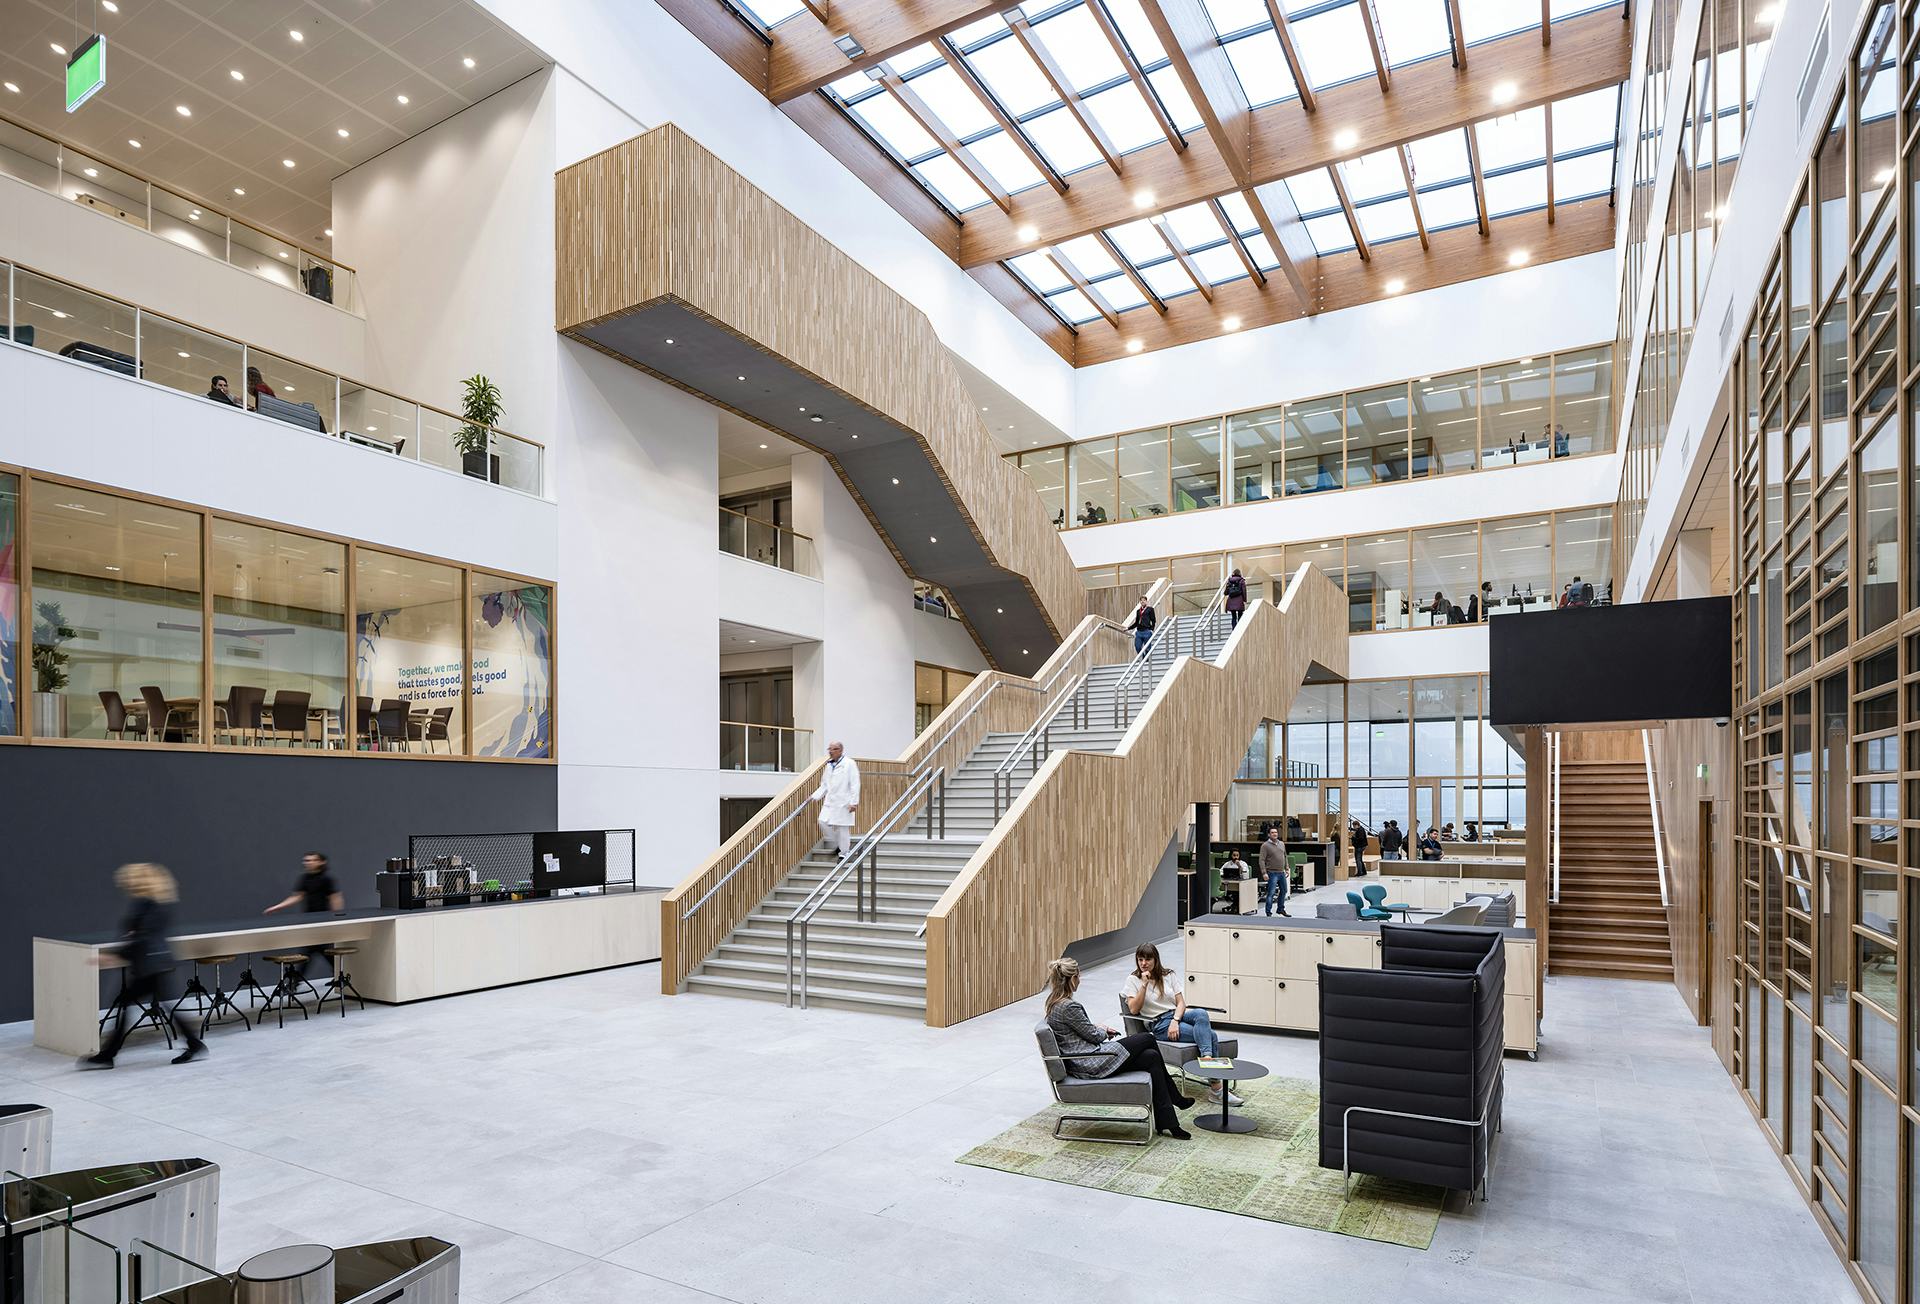 Fotografie: Ossip - Het lichte atrium en brede houten trap verbindt de begane grond met de kantoren en laboratoria van Unilever